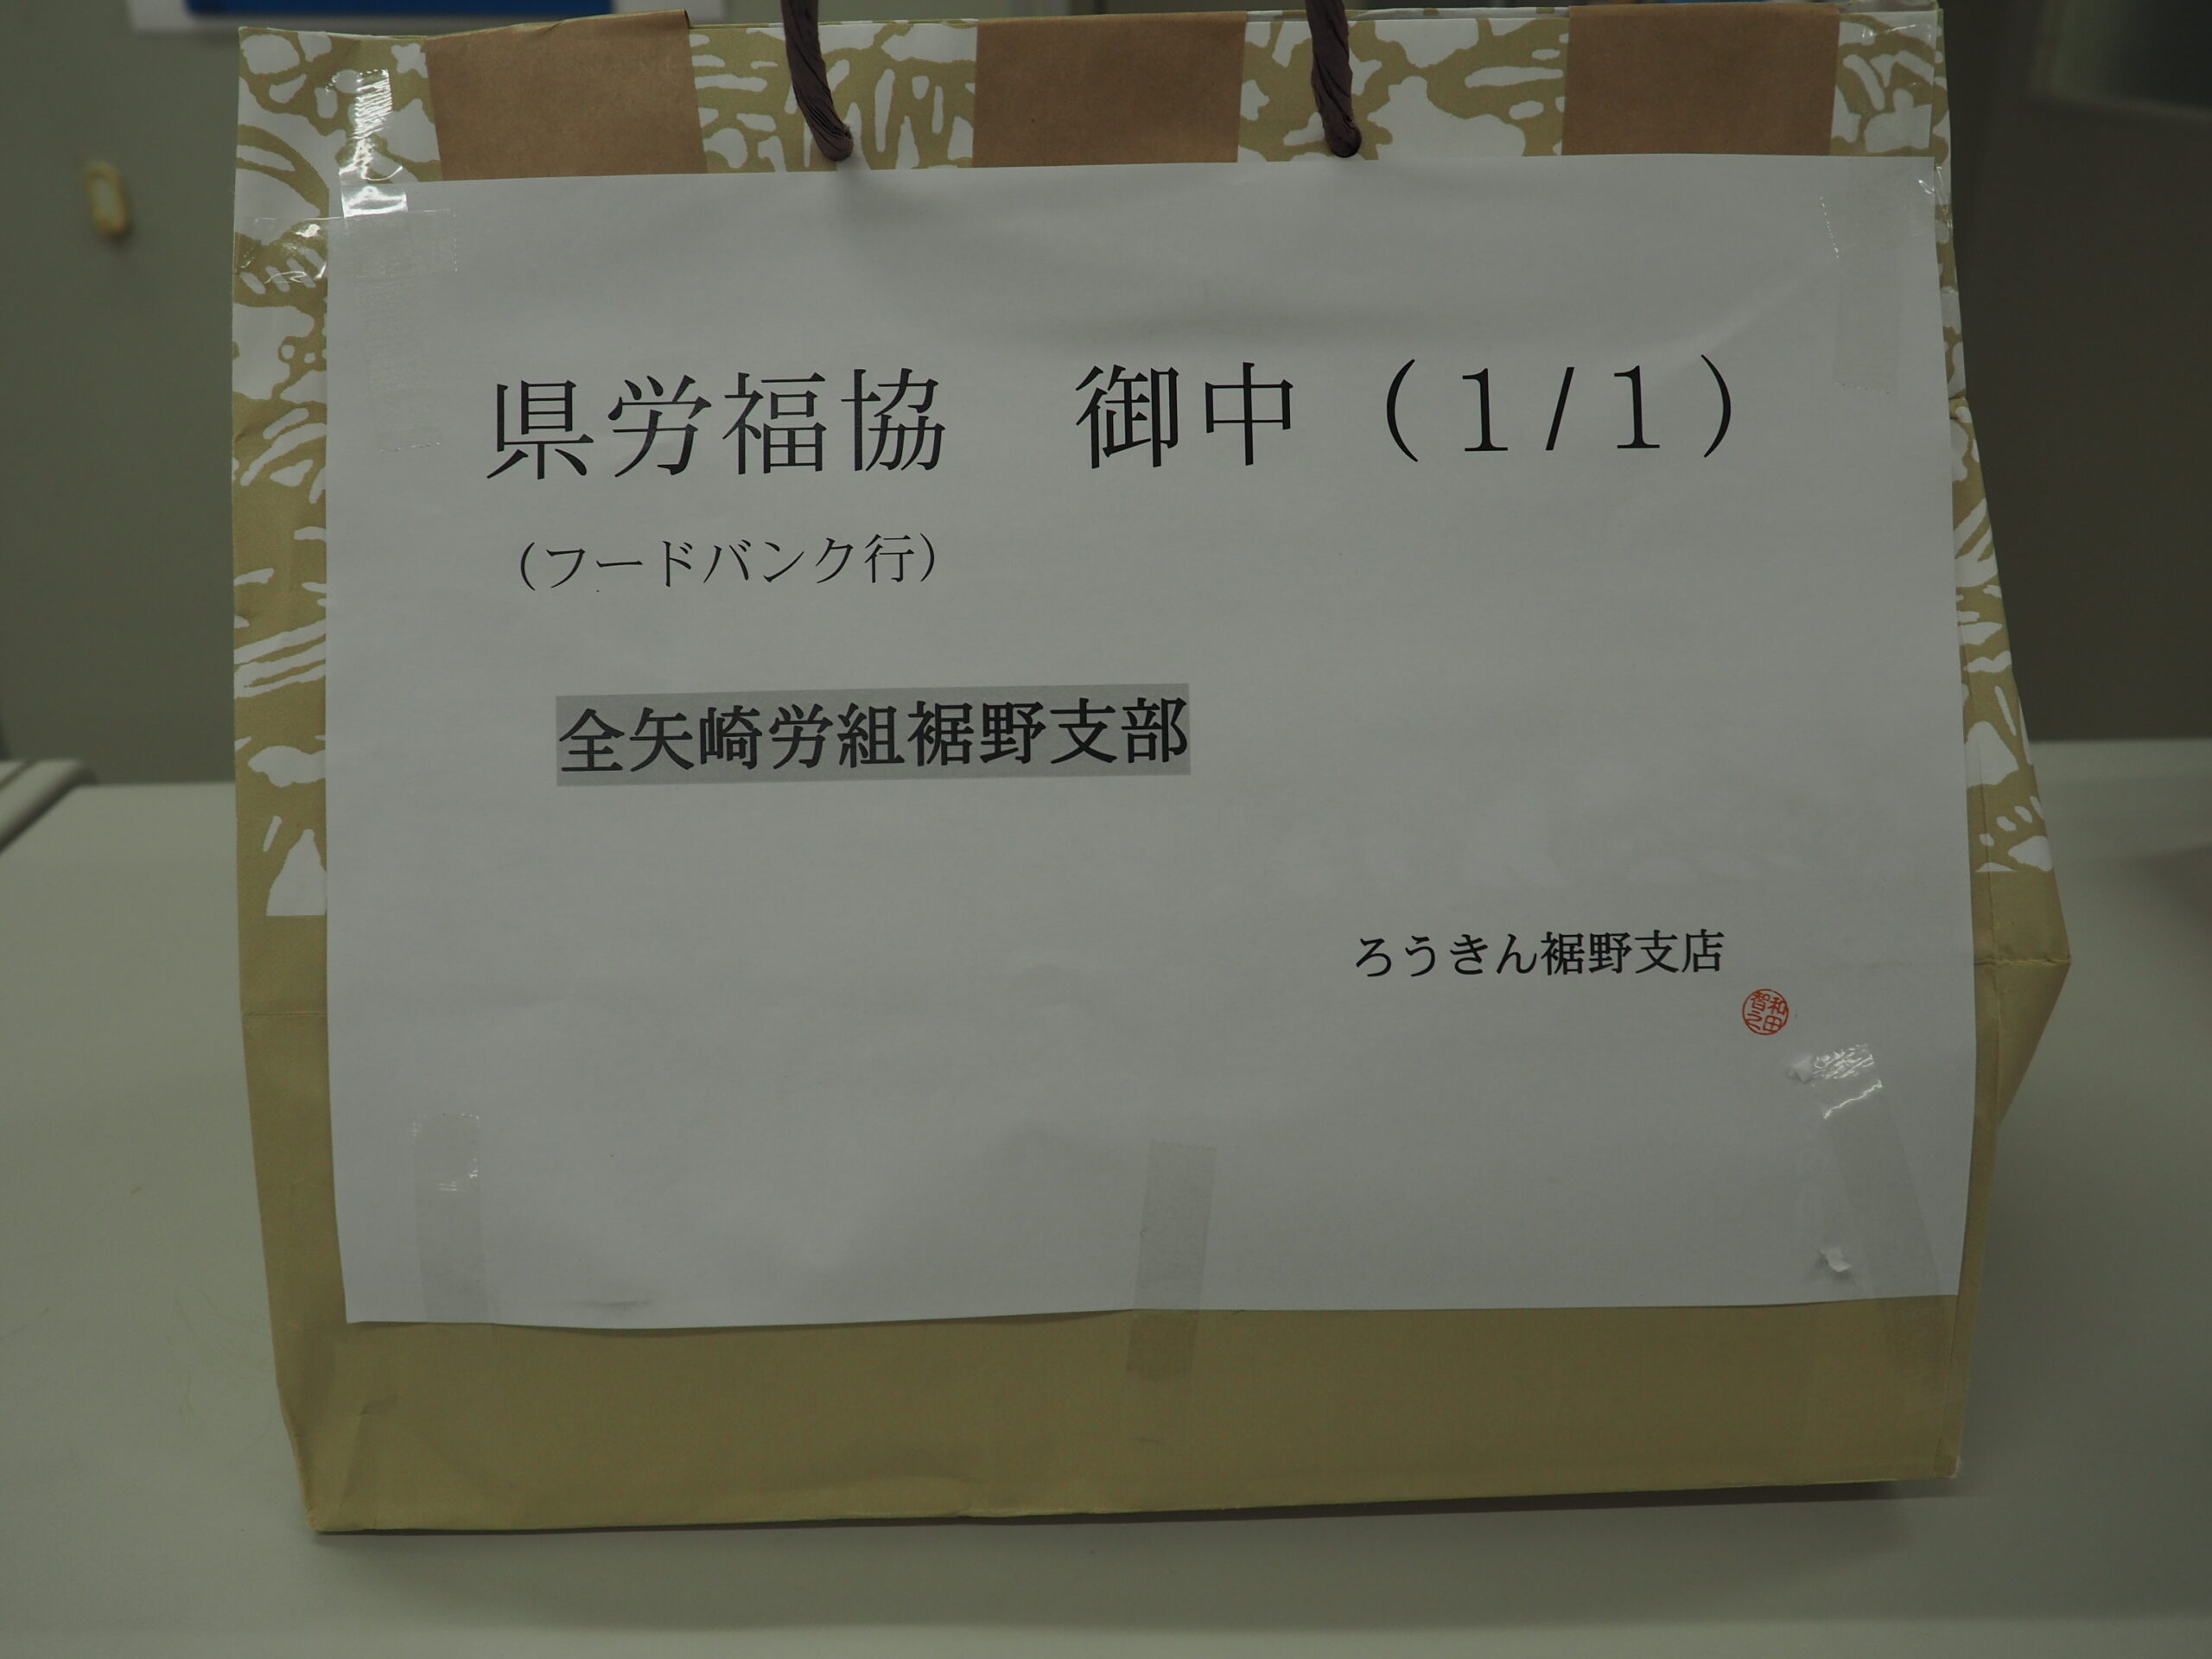 全矢崎労働組合裾野支部様・小糸製作所労働組合様から食品を提供いただきました。